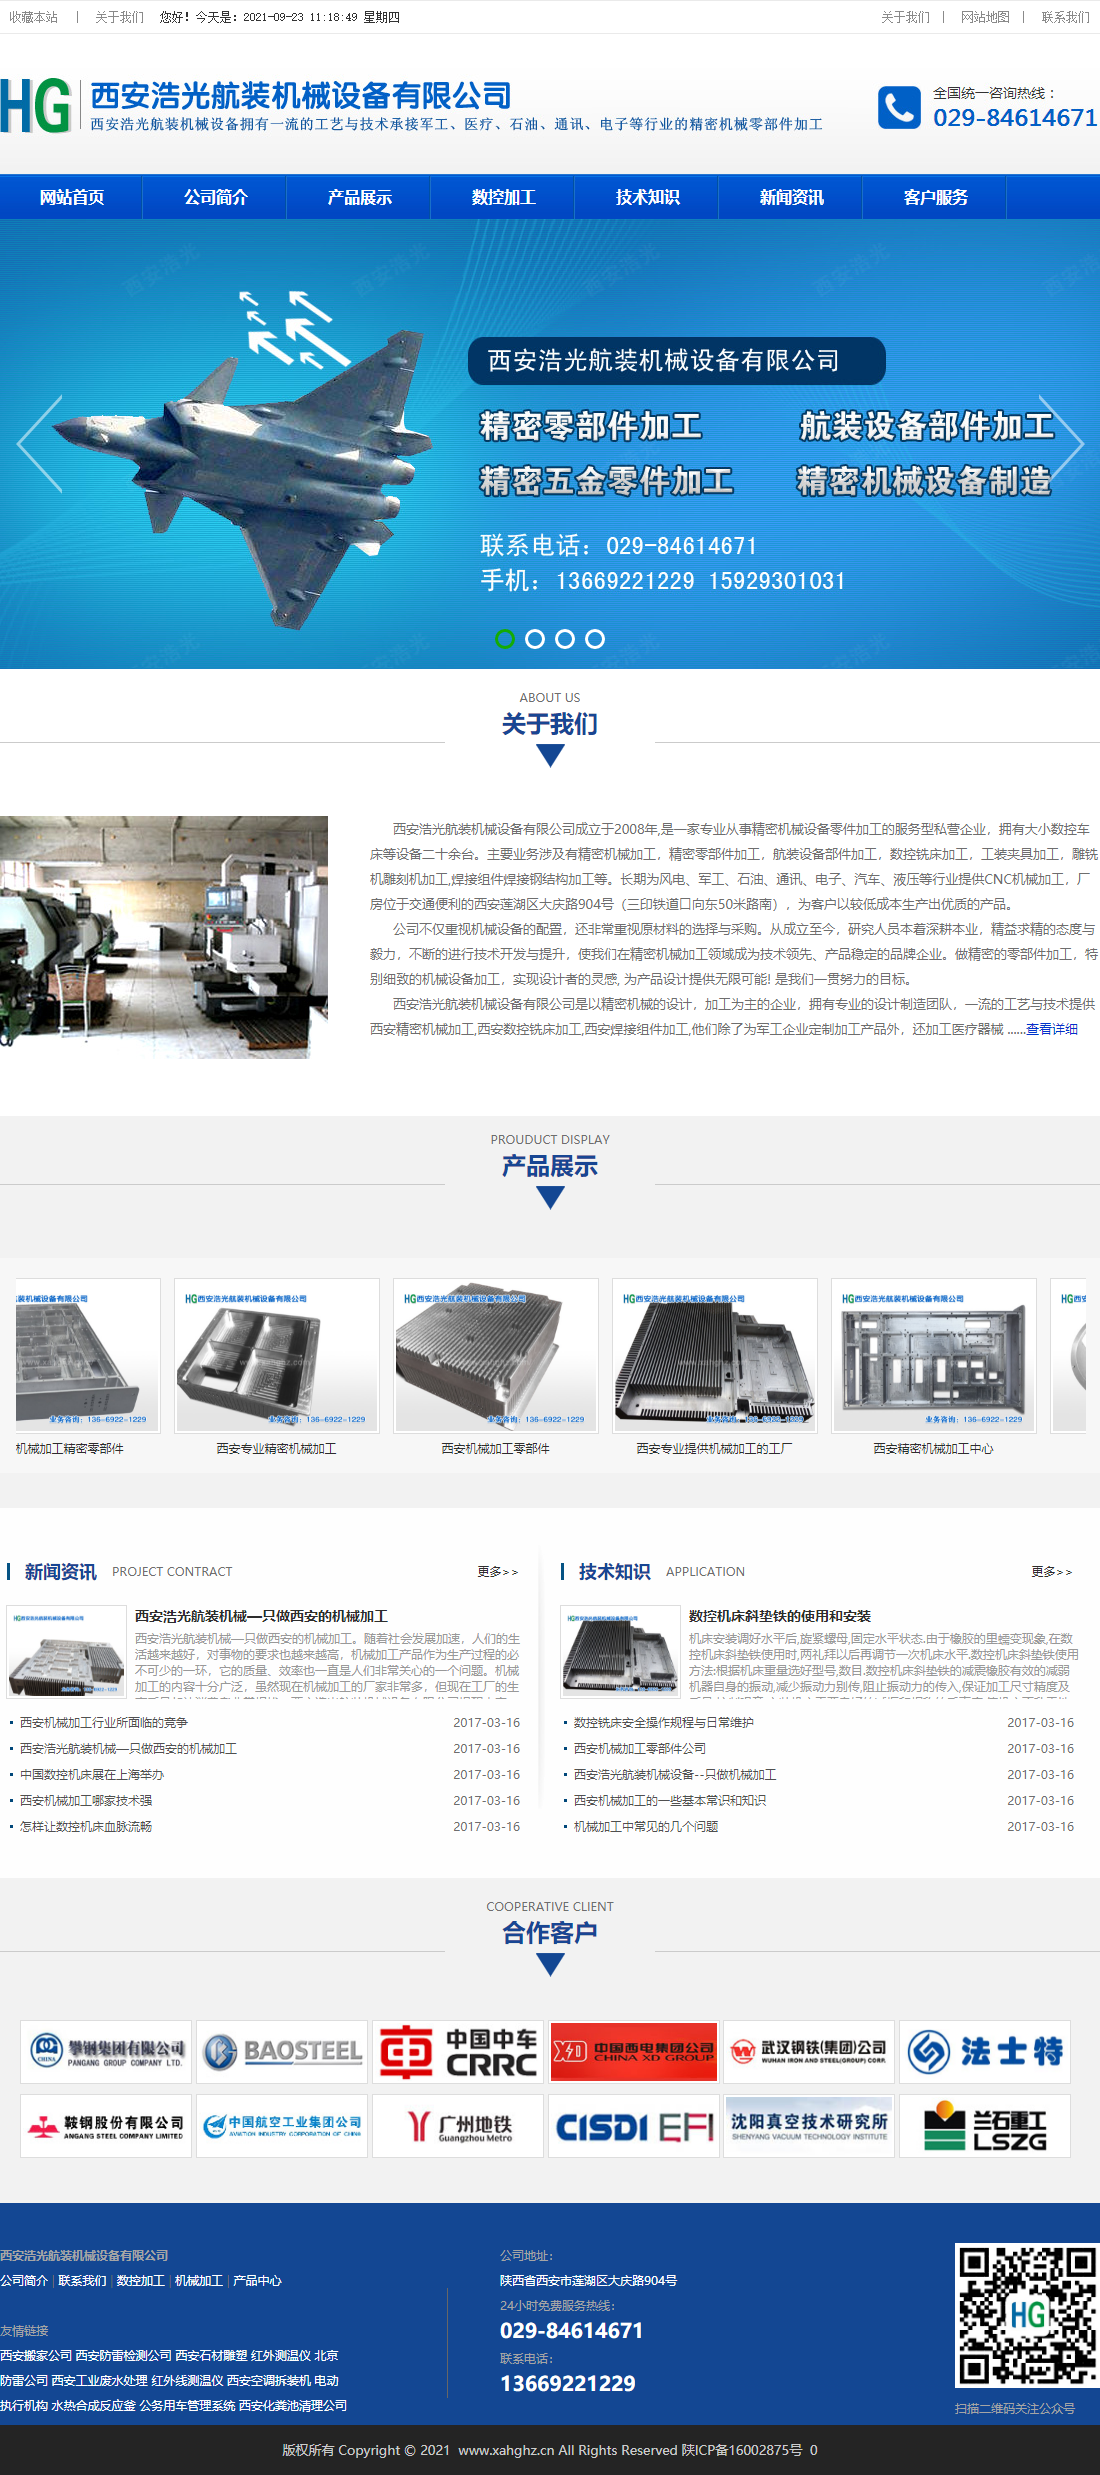 西安浩光航装机械设备有限公司网站案例